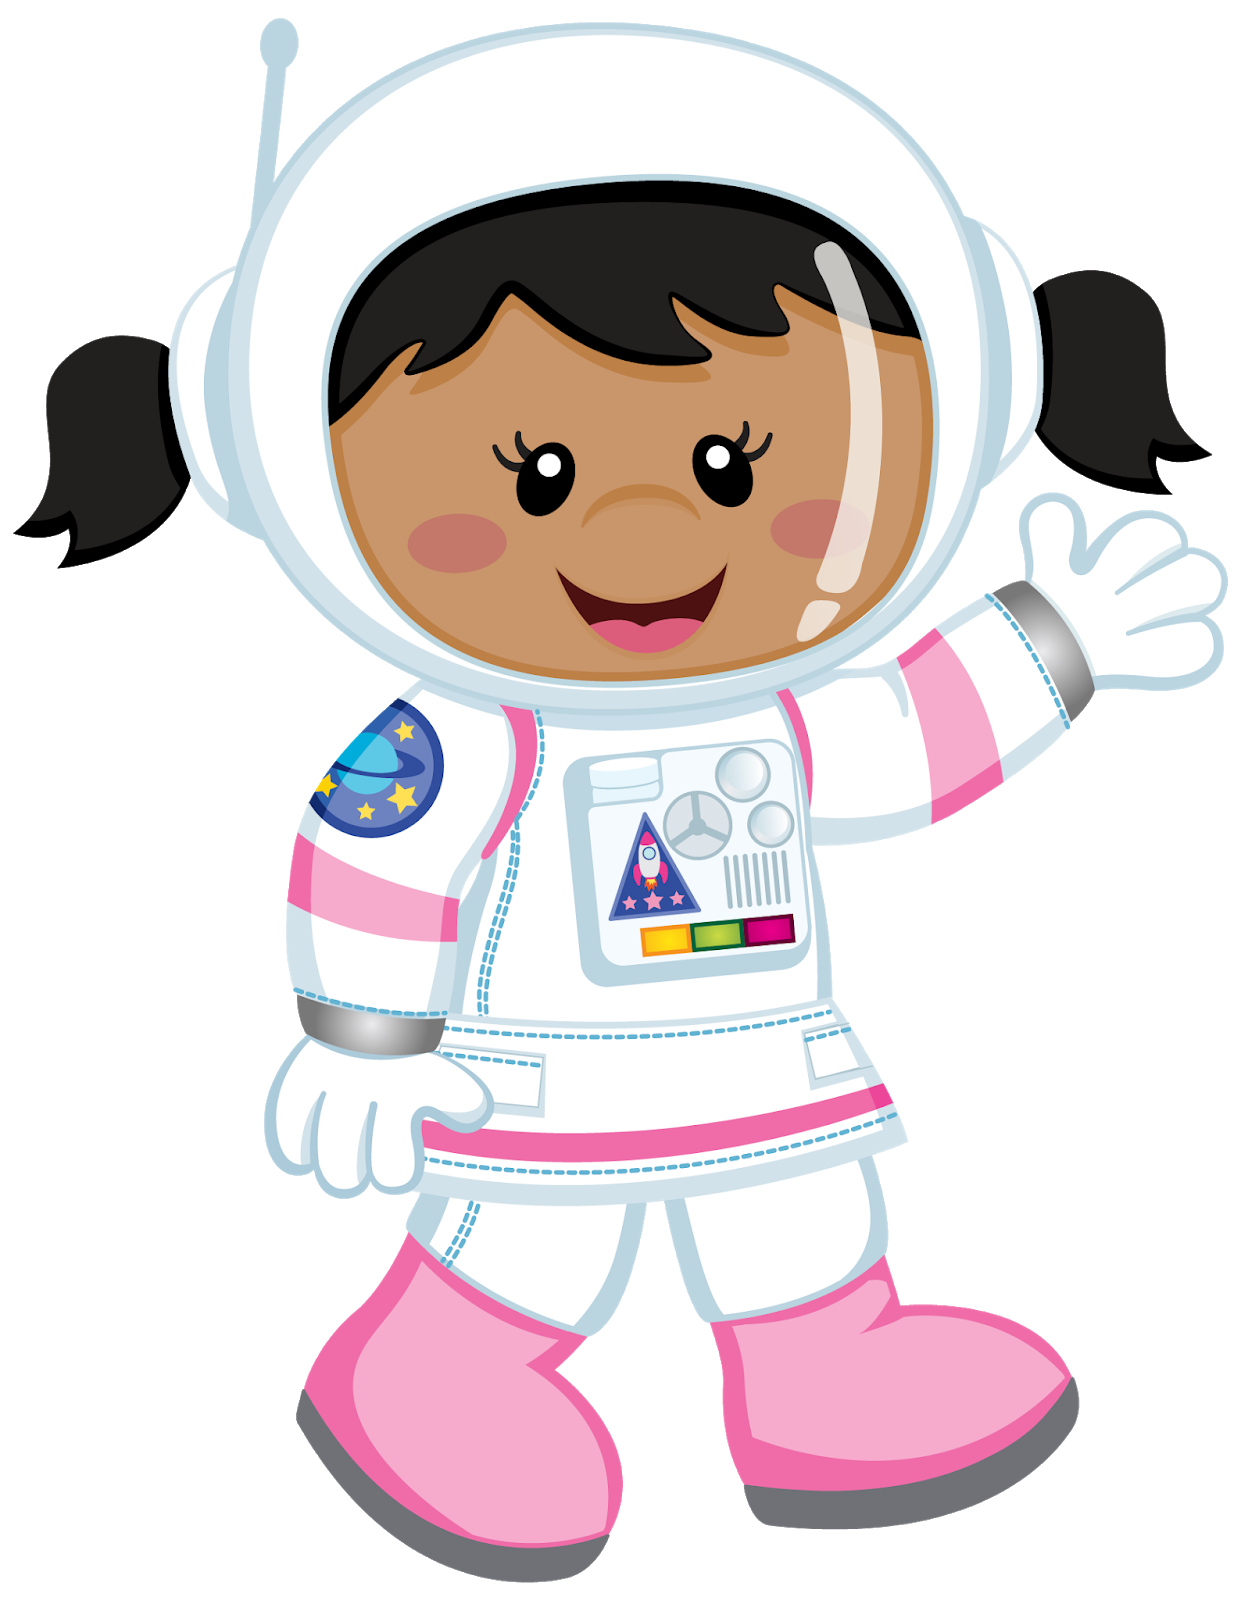 Космонавт для детей. Астронавт мультяшный. Космонавт для детей без фона. Малыш космонавт. Космонавт картинки для детей дошкольного возраста